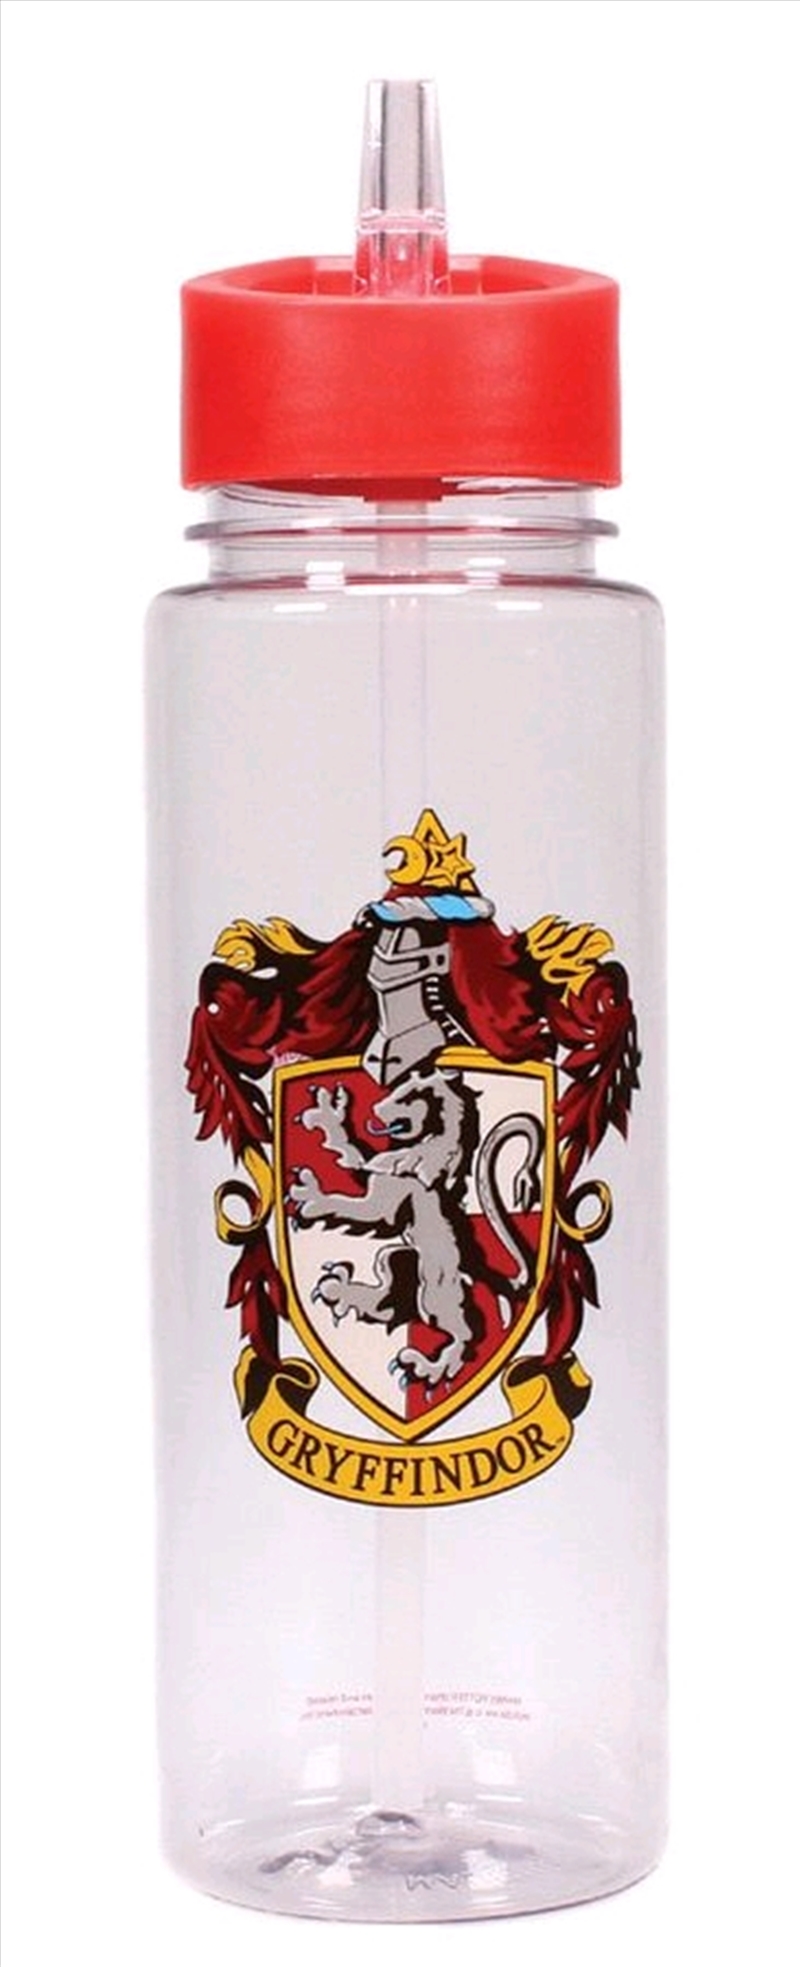 Harry Potter - Gryffindor Water Bottle/Product Detail/Drink Bottles